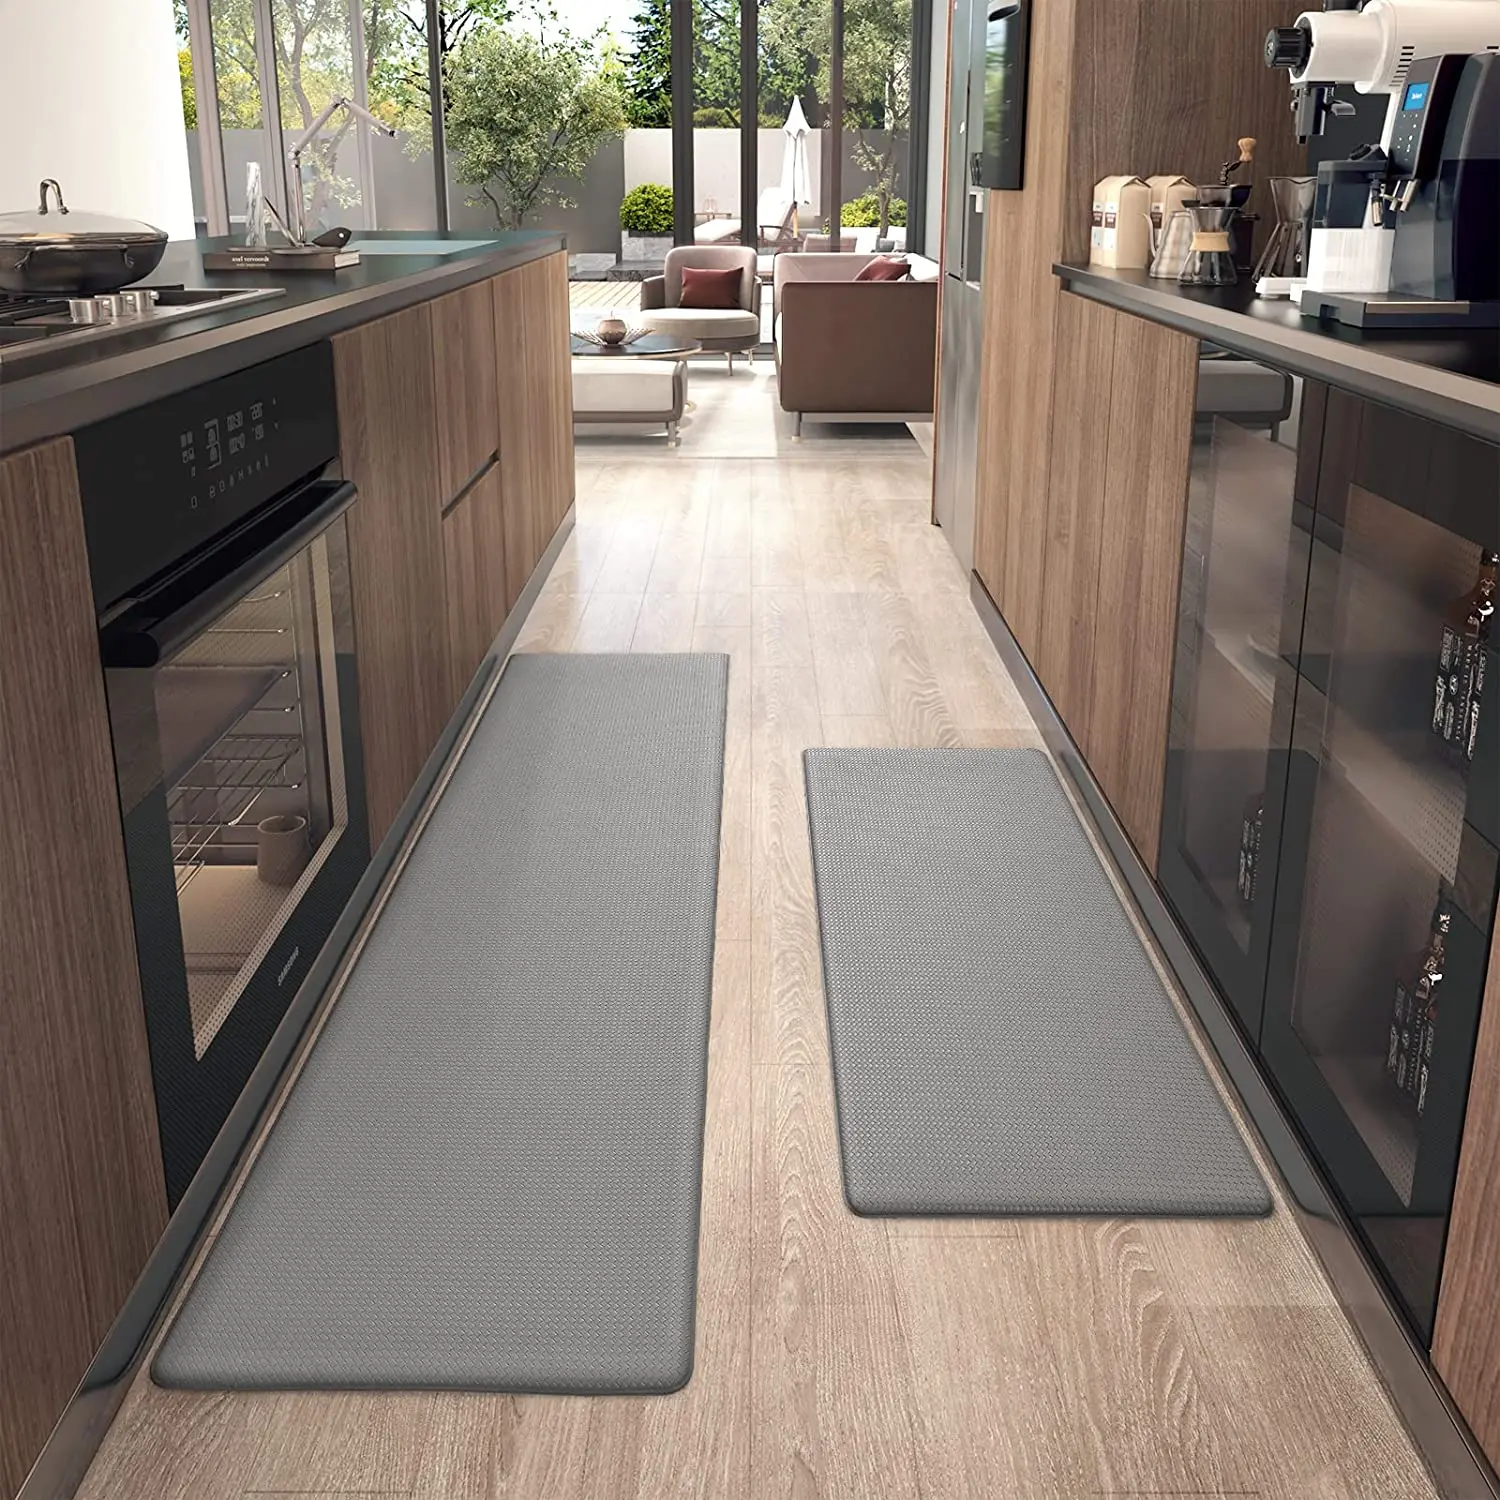 Kitchen Floor Mat Gray Carpet Non-slip Waterproof Pvc Mats Home Decoration  Luxury Big Size Custom Rug Alfombras De Cocina 주방바닥매트